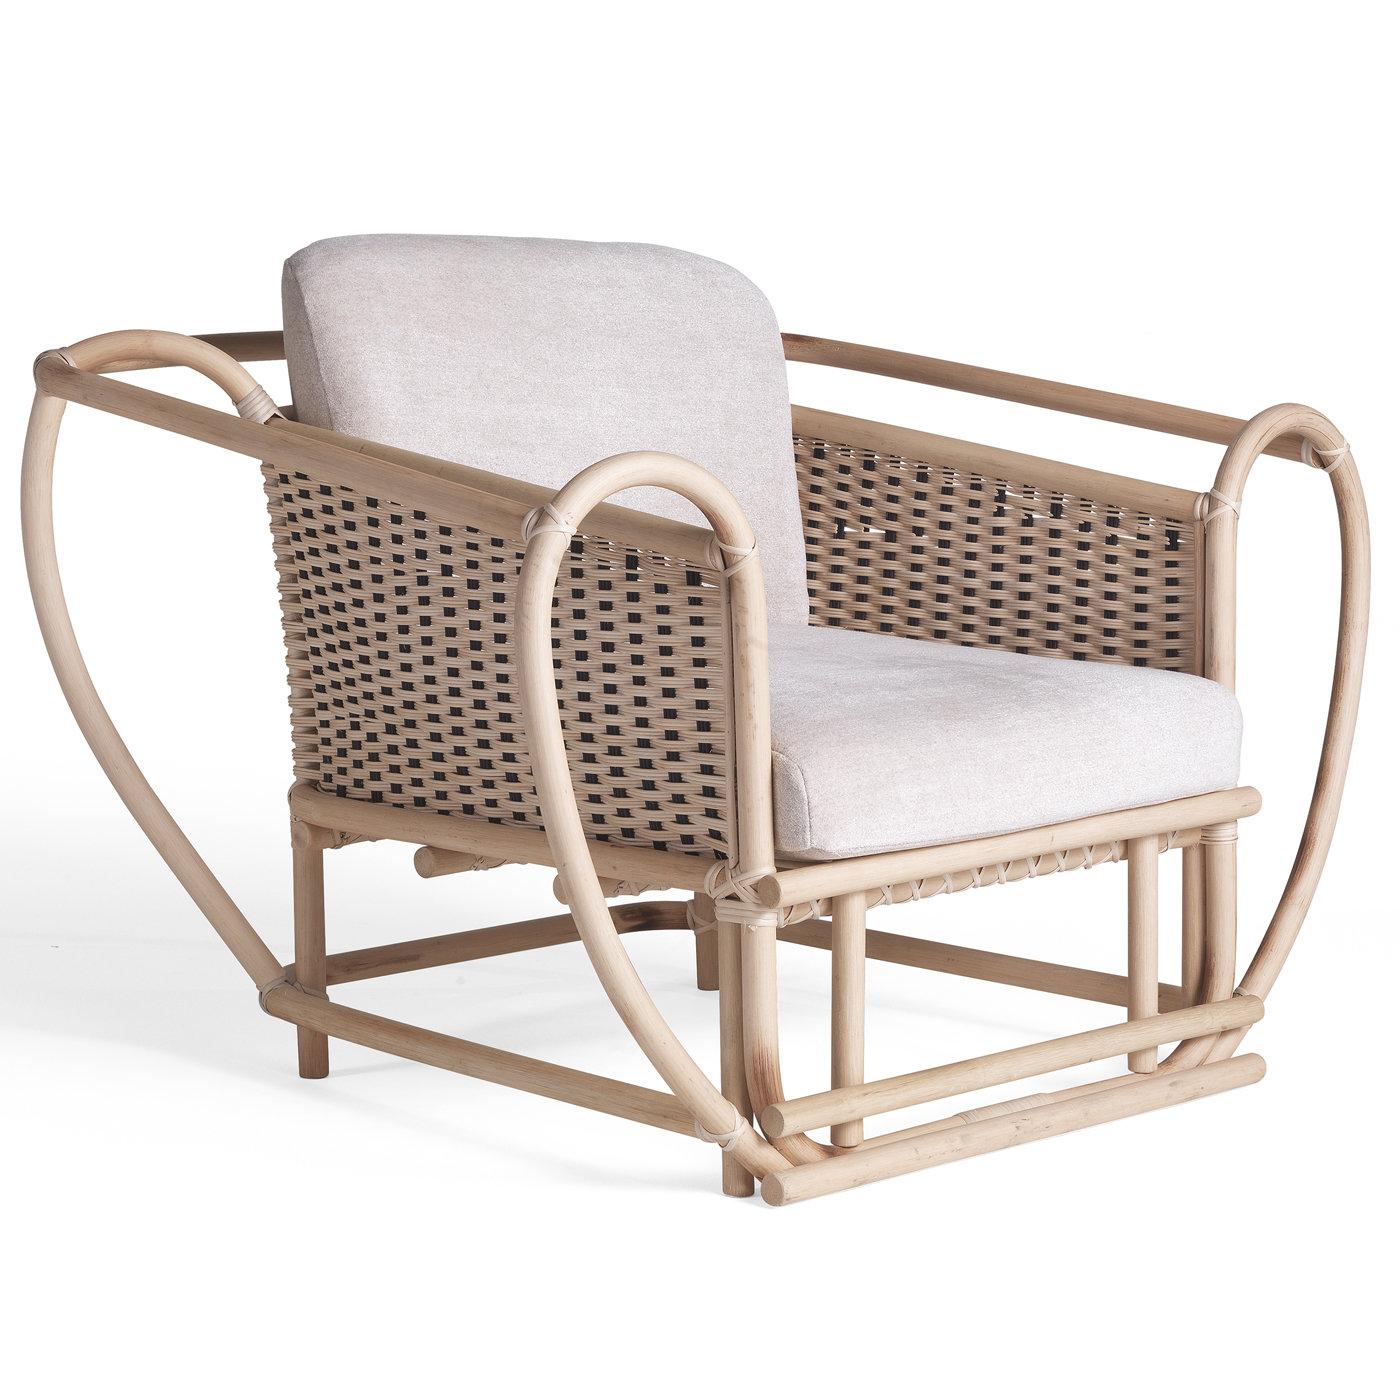 Dieser Sessel, der romantische Raffinesse ausstrahlt, ist ein perfektes Beispiel für meisterhafte Handwerkskunst, die traditionelle Techniken mit moderner Ästhetik verbindet. Die innovative und vielseitige, gewundene und umhüllende Struktur ist aus